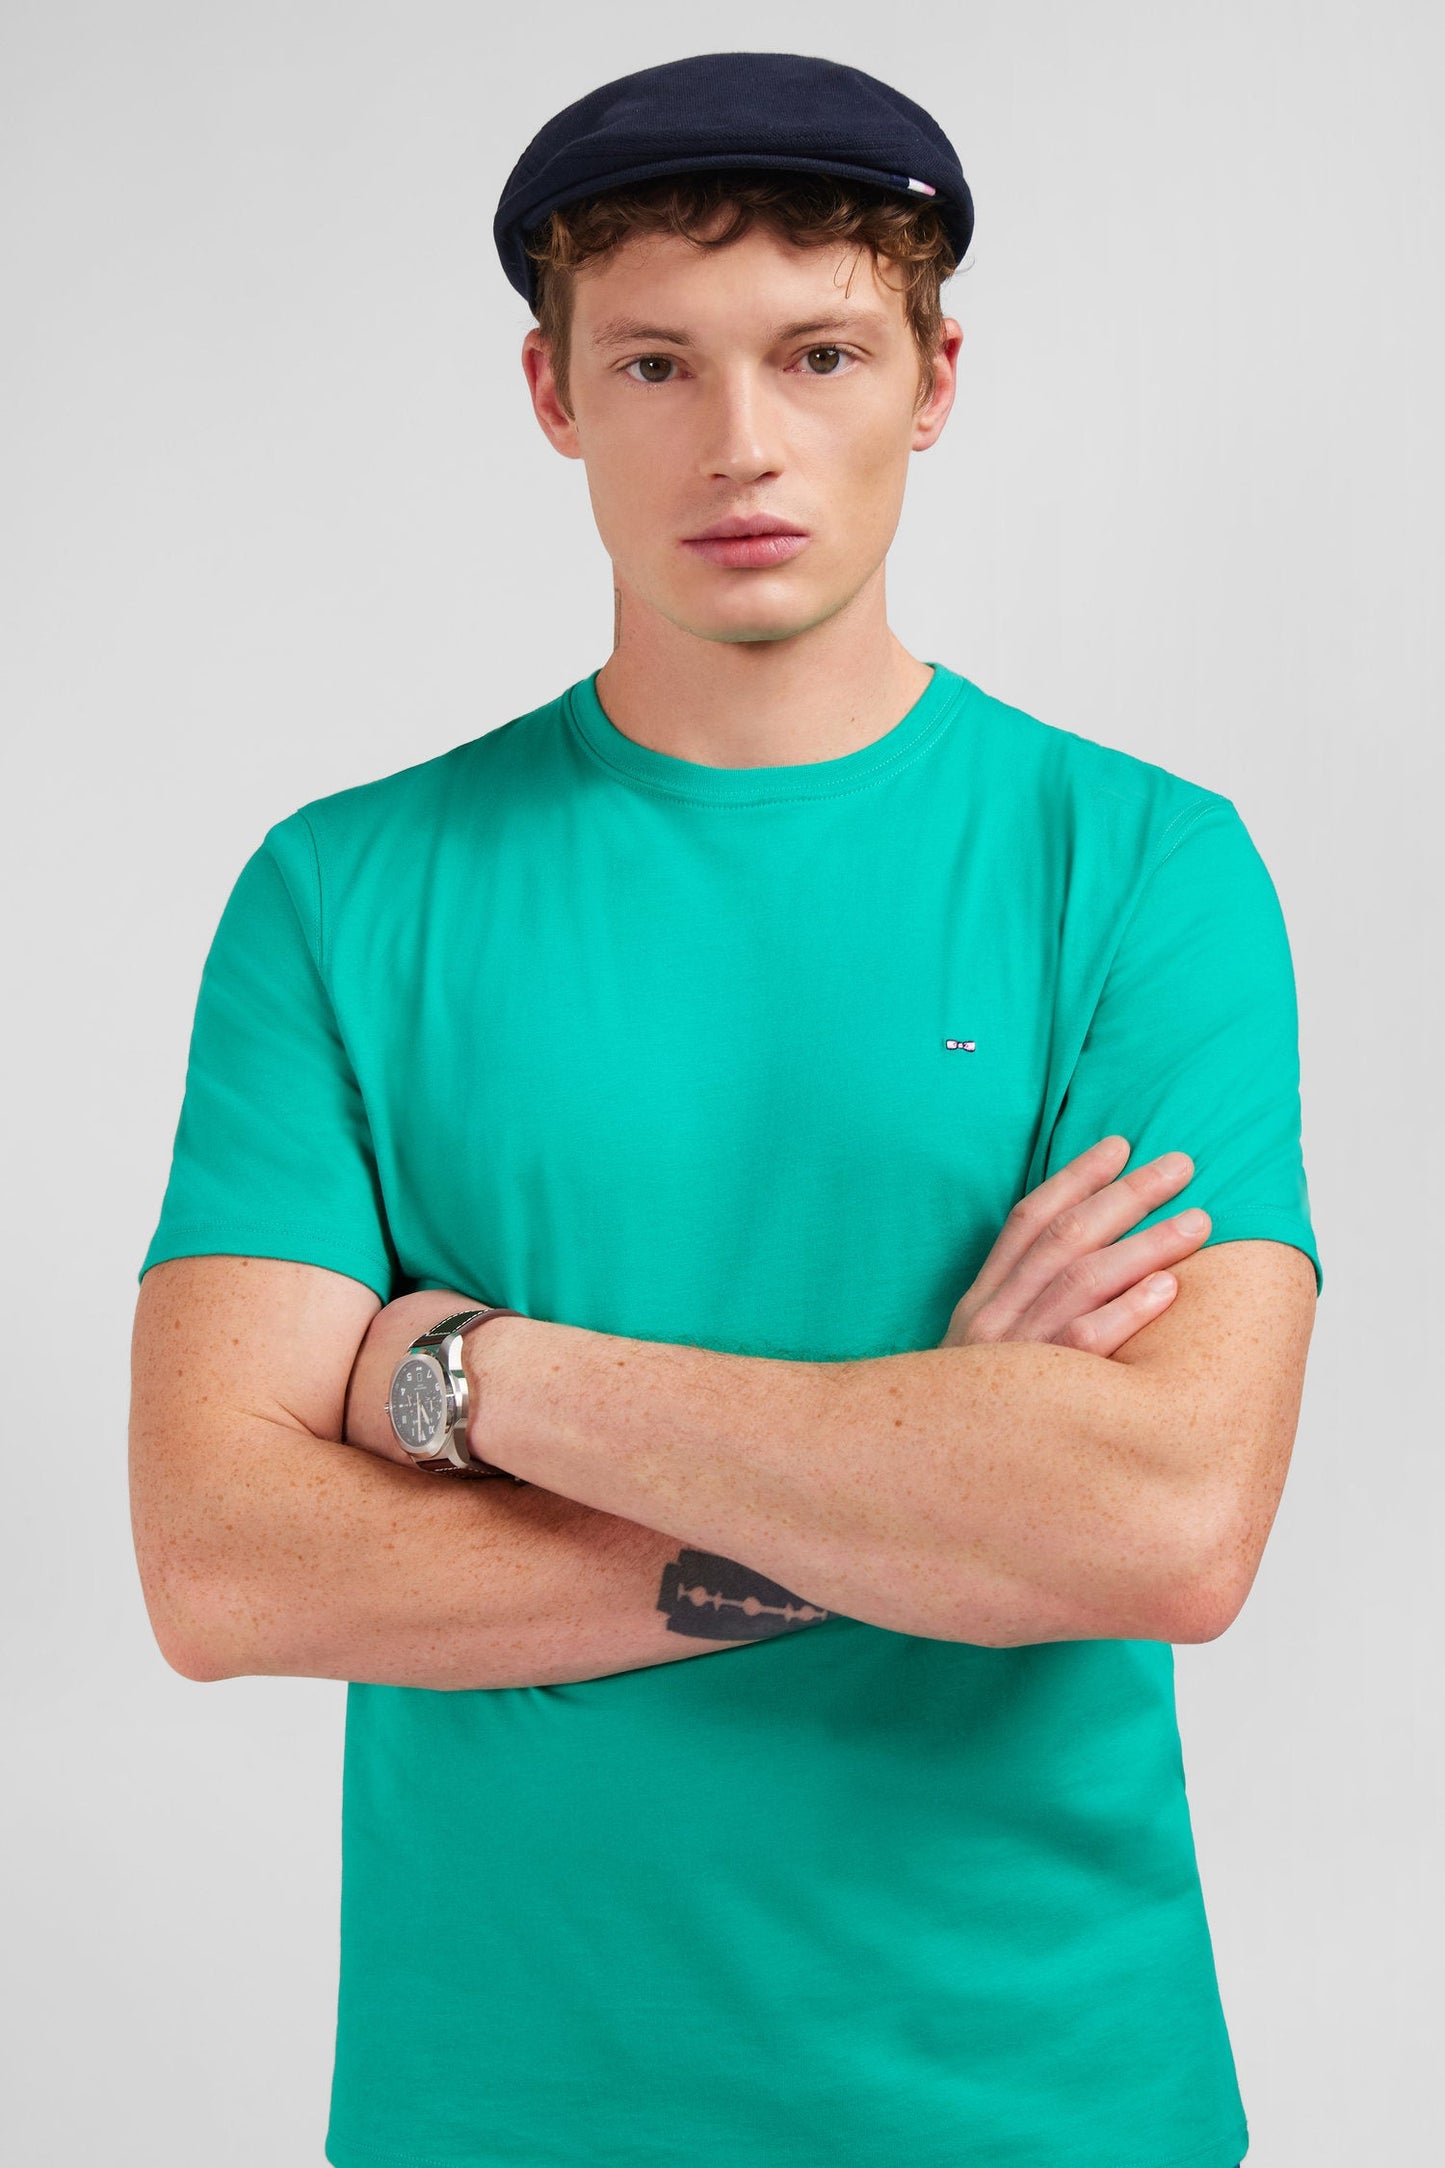 T-shirt vert à manches courtes - Image 2